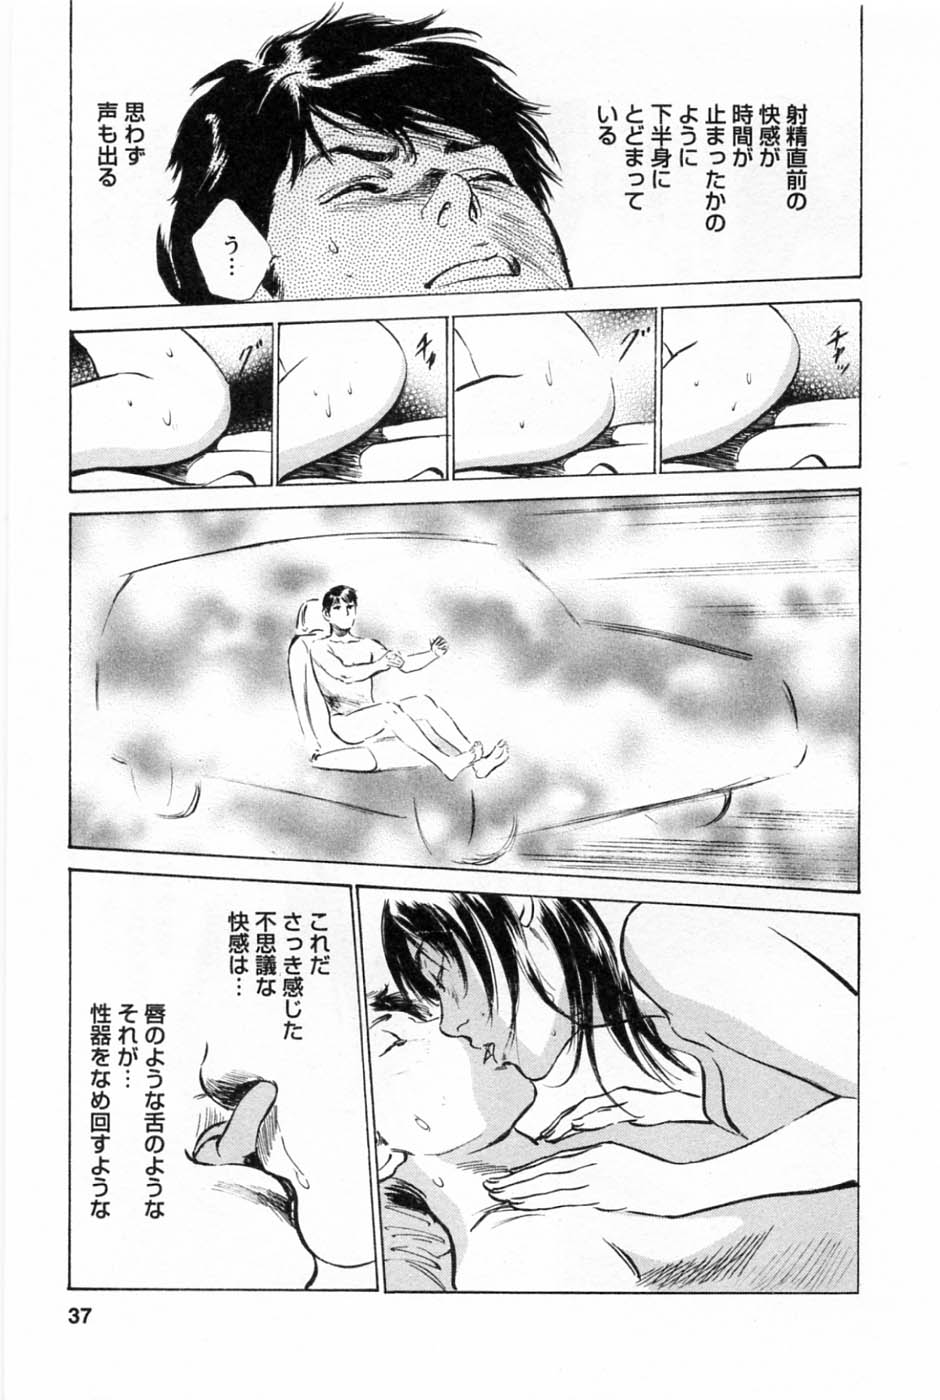 [Tomisawa Chinatsu, Hazuki Kaoru] My Pure Lady Vol.1 page 40 full